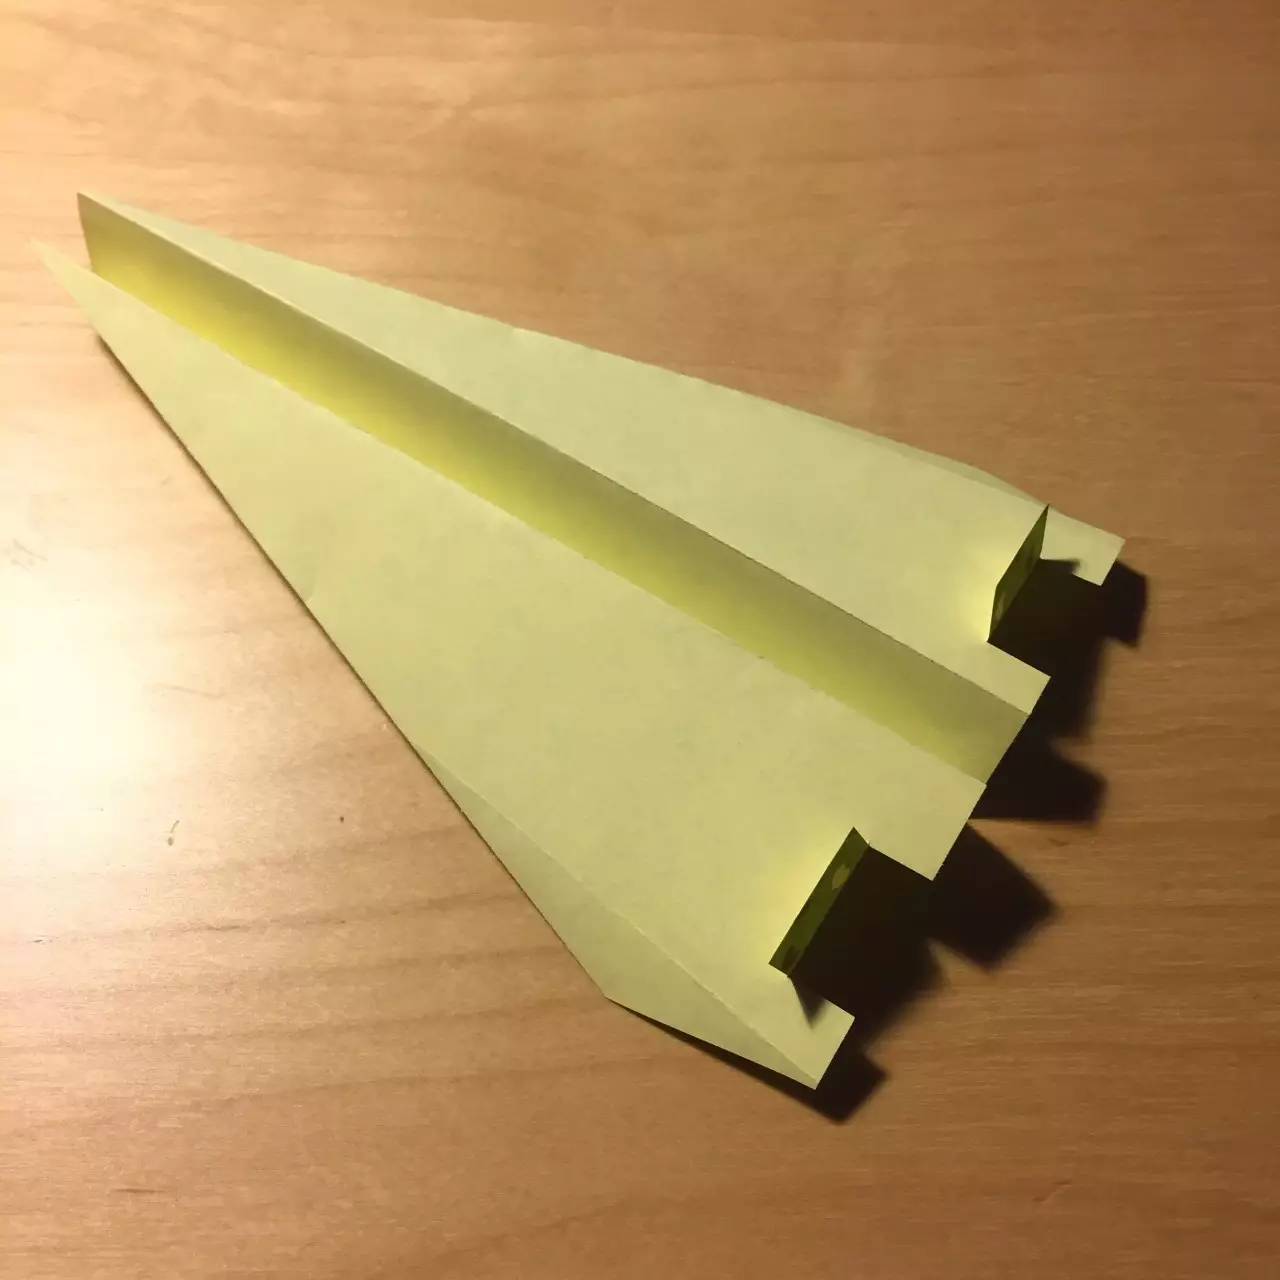 纸飞机发射器教程-纸飞机发射器制作步骤